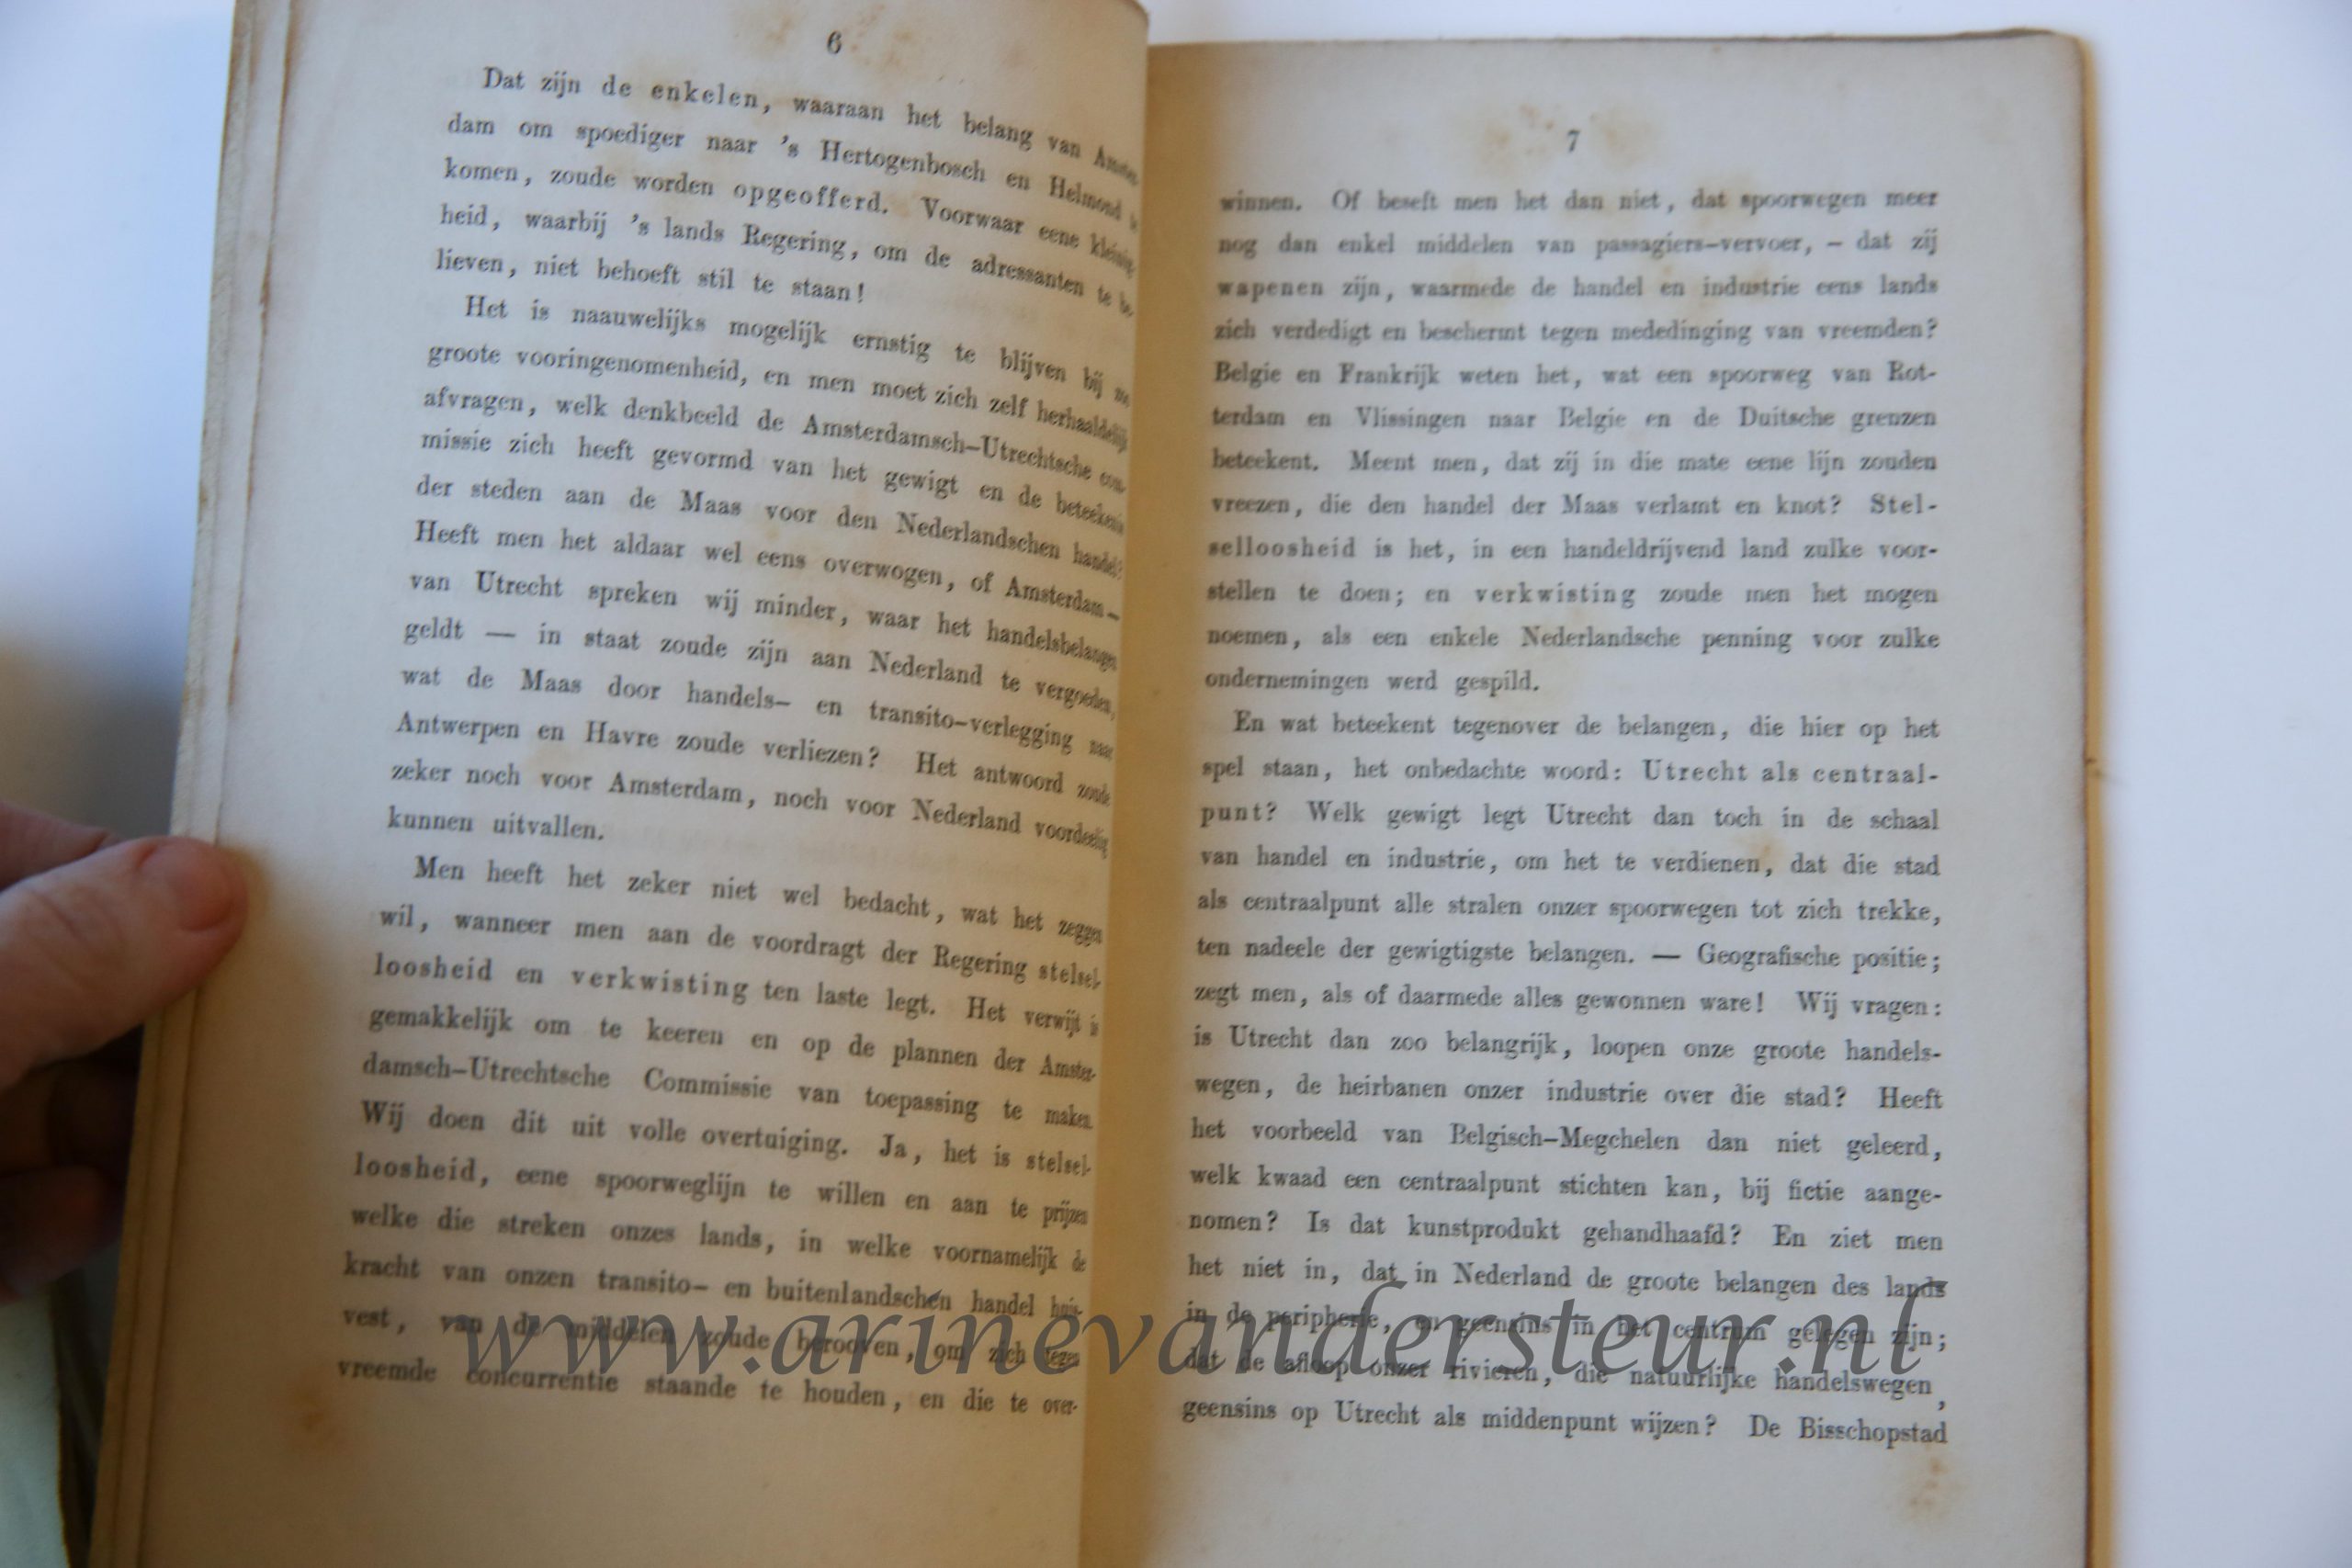 Een Woord over het adres der Amsterdamsch-Utrechtsche commissie betrekkelijk de Spoorwegen, Rotterdam: H.A. Kramers 1859, 34 pp.